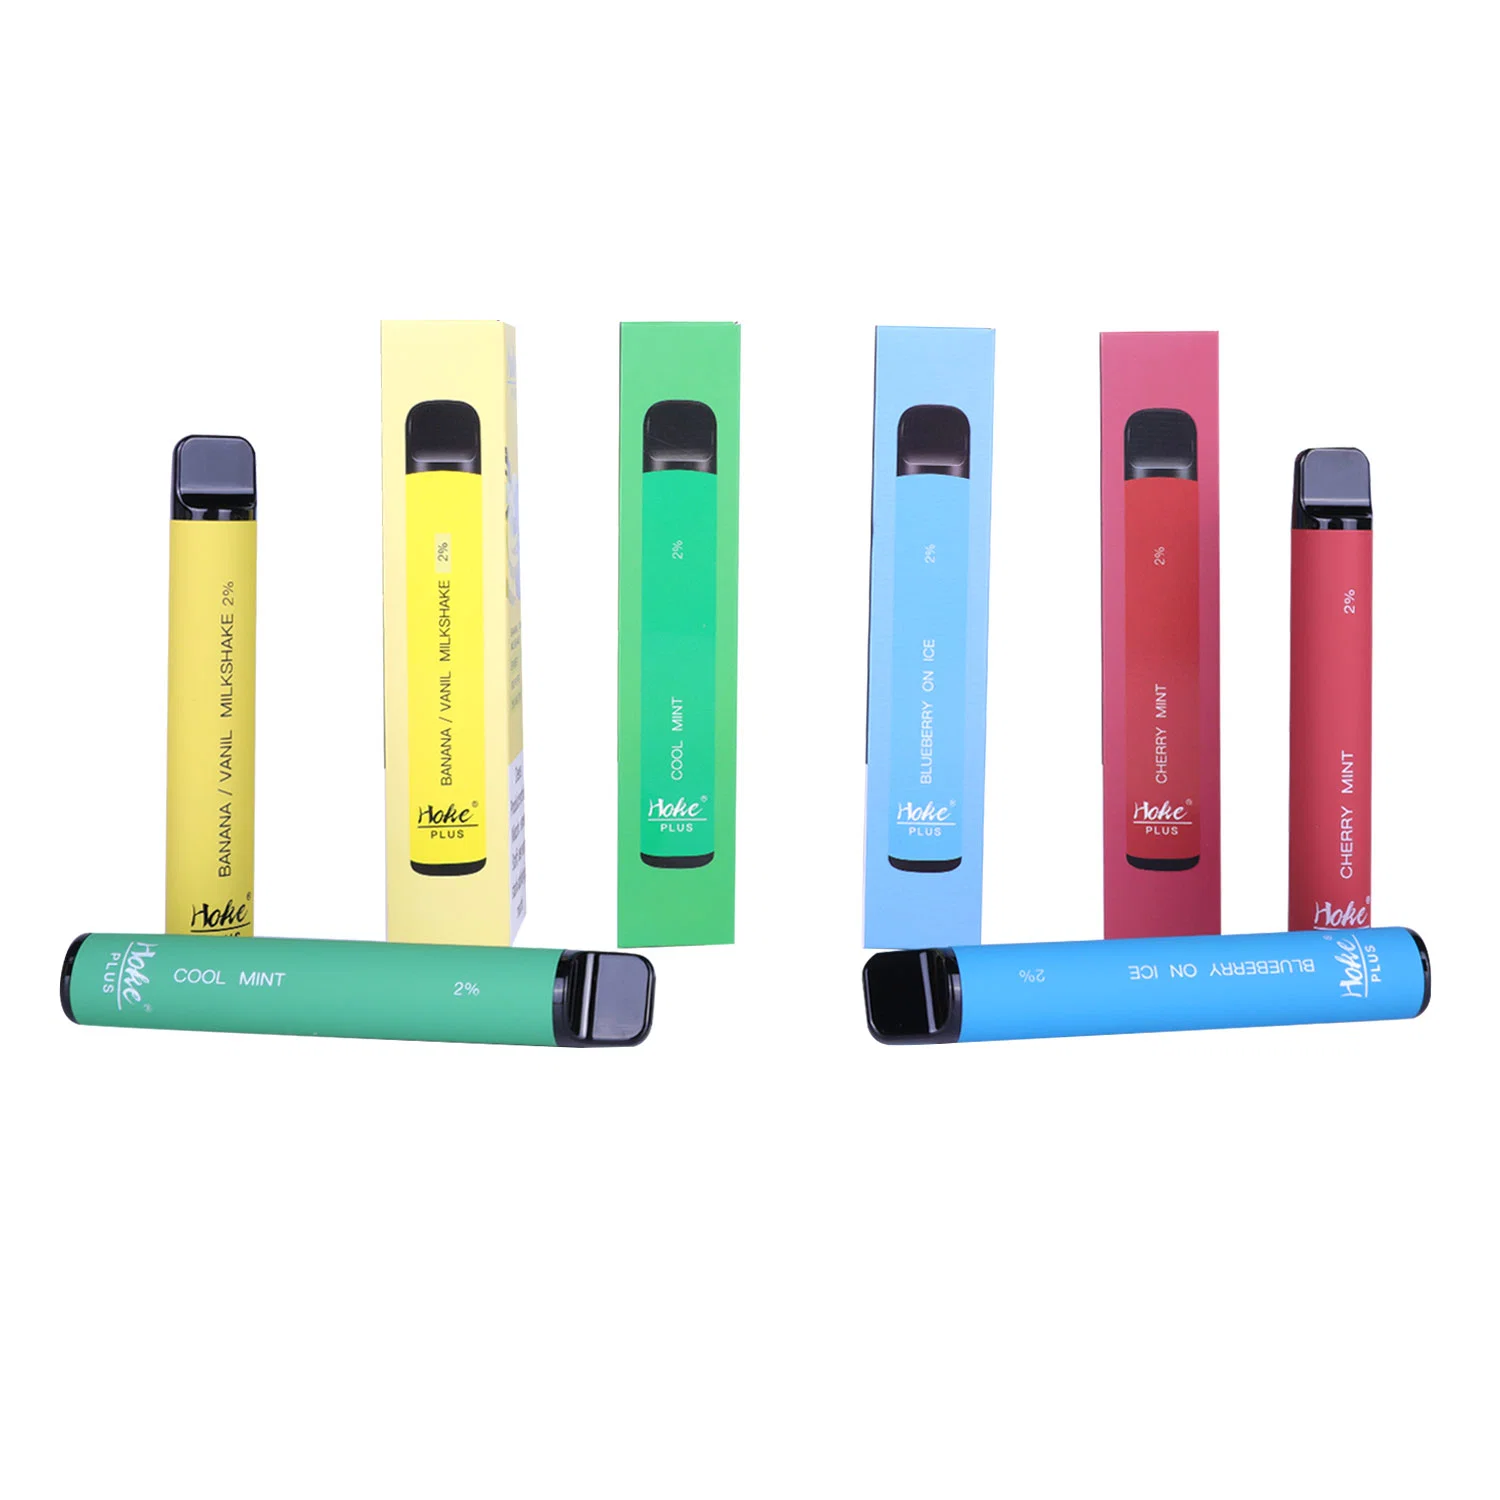 China Wholesale Hoke Disposable Pod 800 Puff Bar 1500 Puffs I Vape Custom Vaporizer E Cigarette Price Hookah Shisha Vape Pen